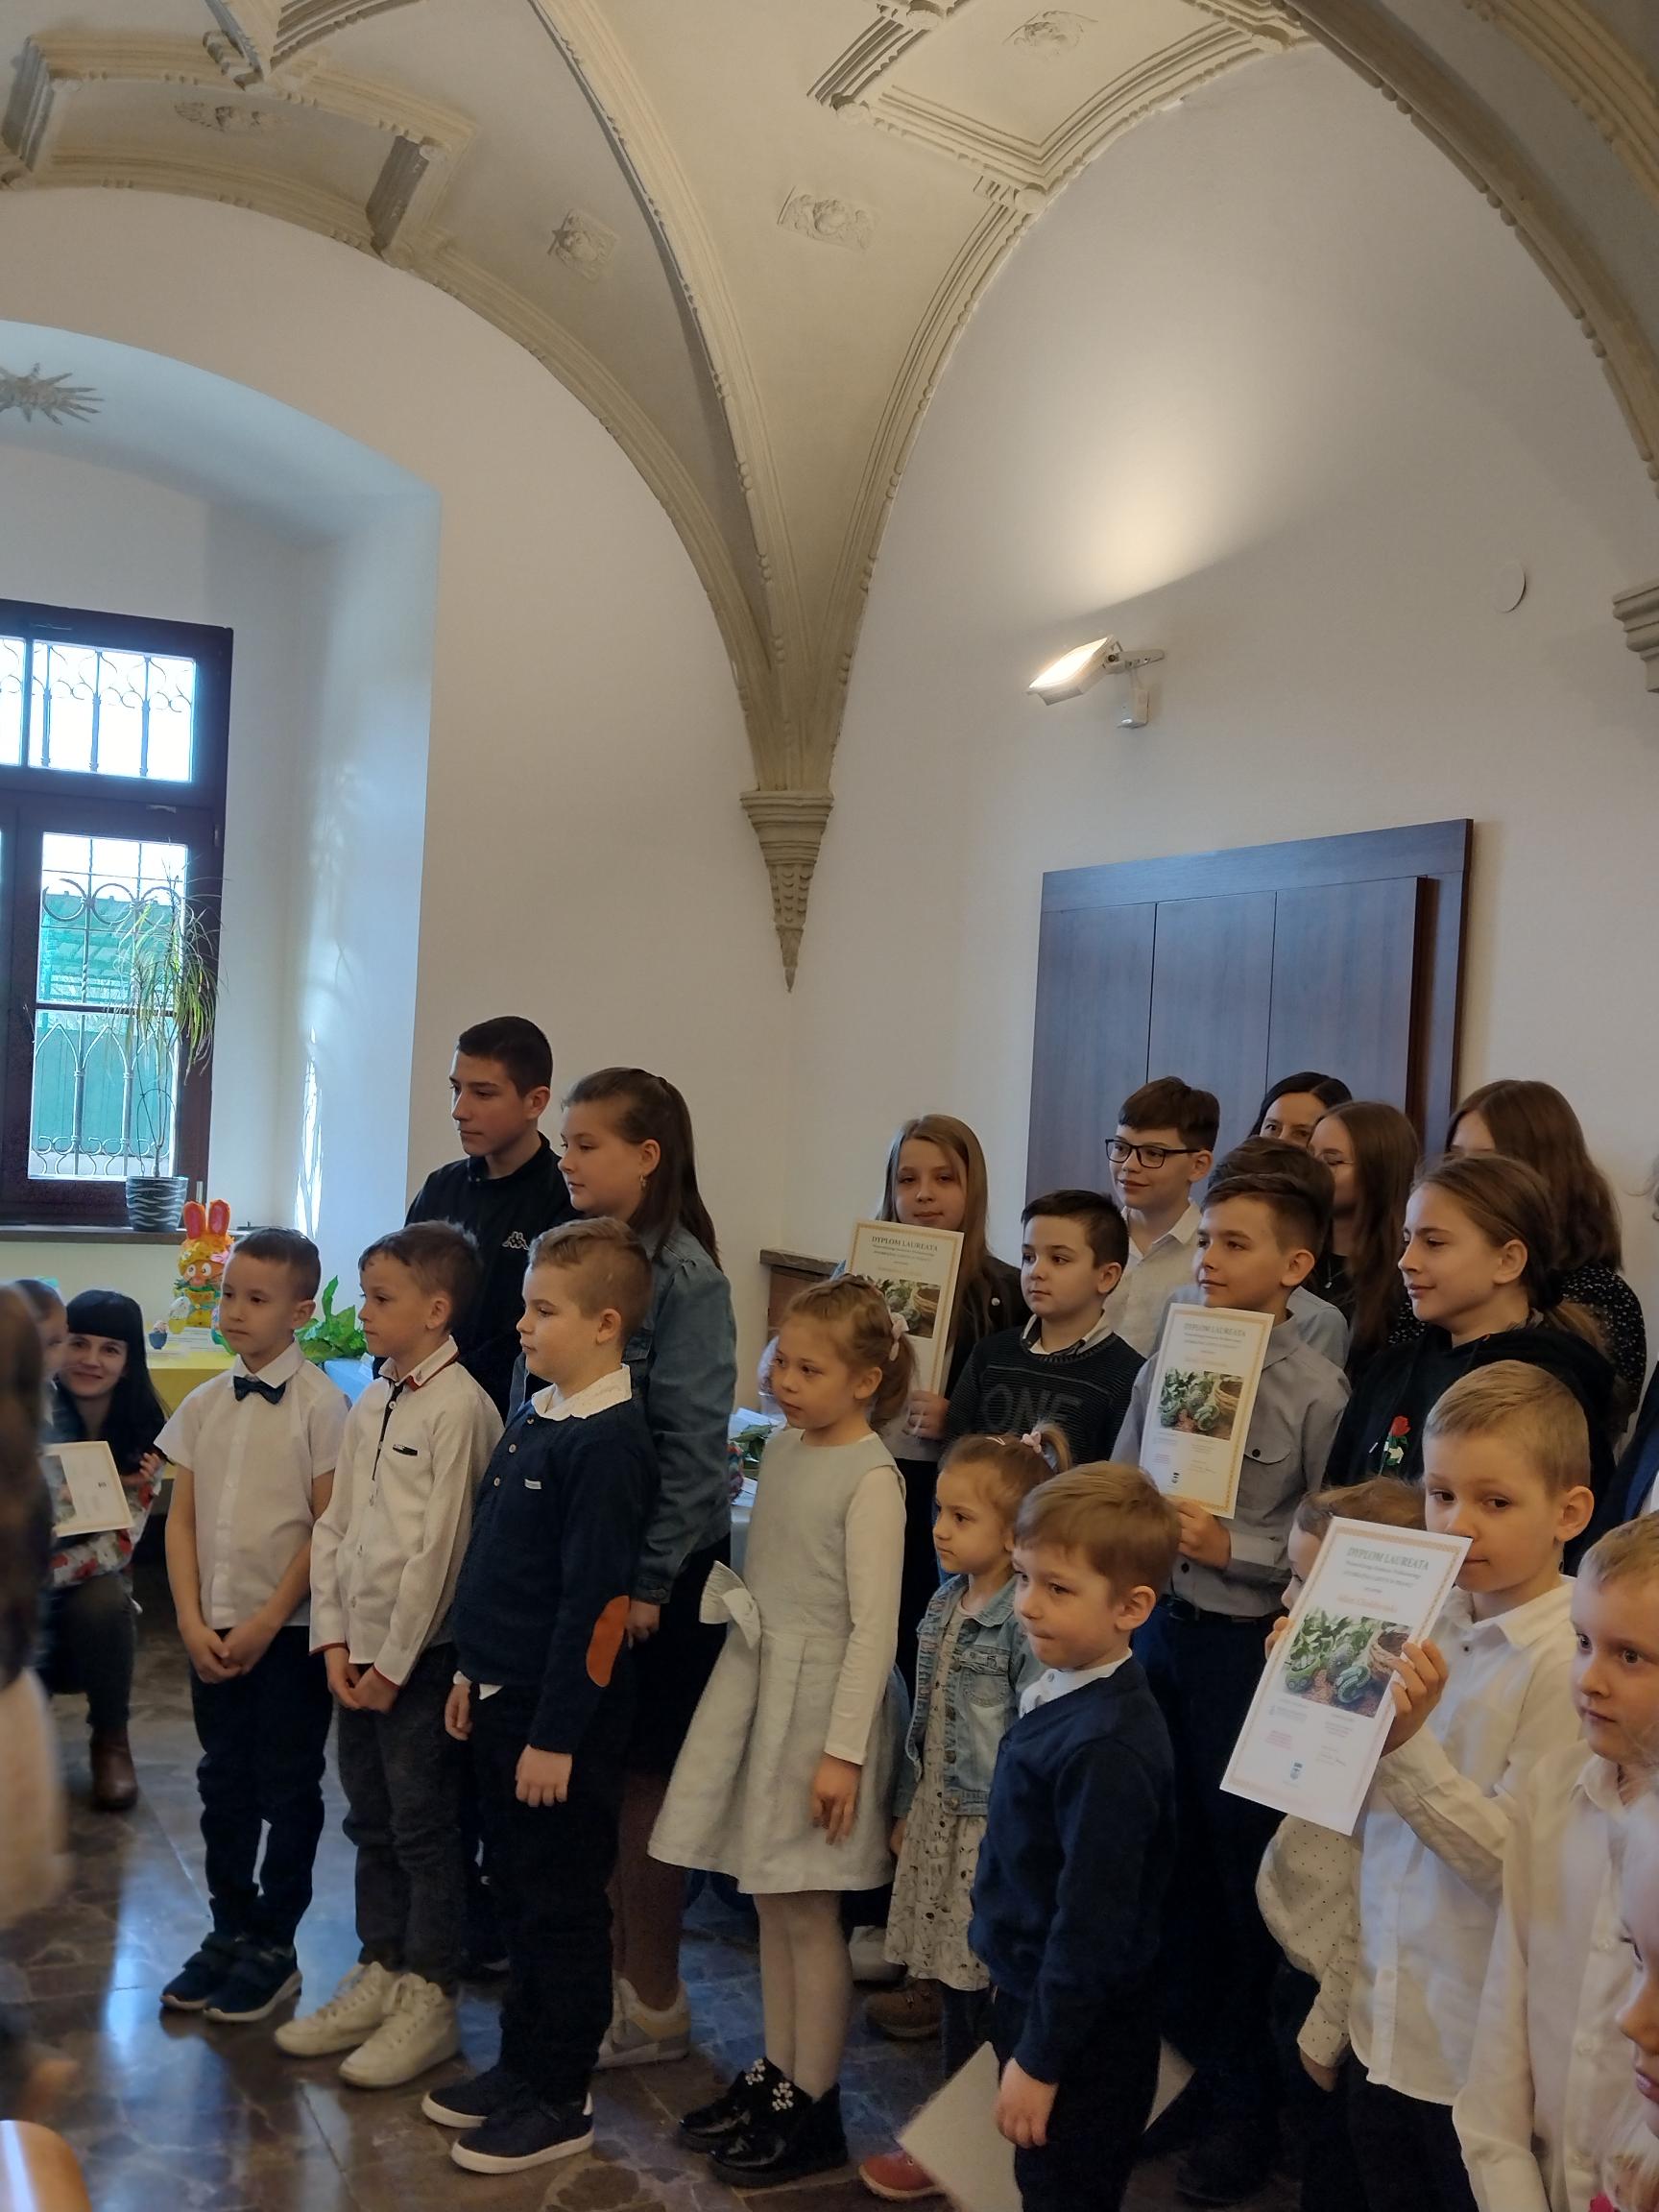 Dzieci ze szkół podstawowych z dyplomami - laureaci Wojewódzkiego Konkursu Wielkanocnego "Wyobraźnia ukryta w pisance"